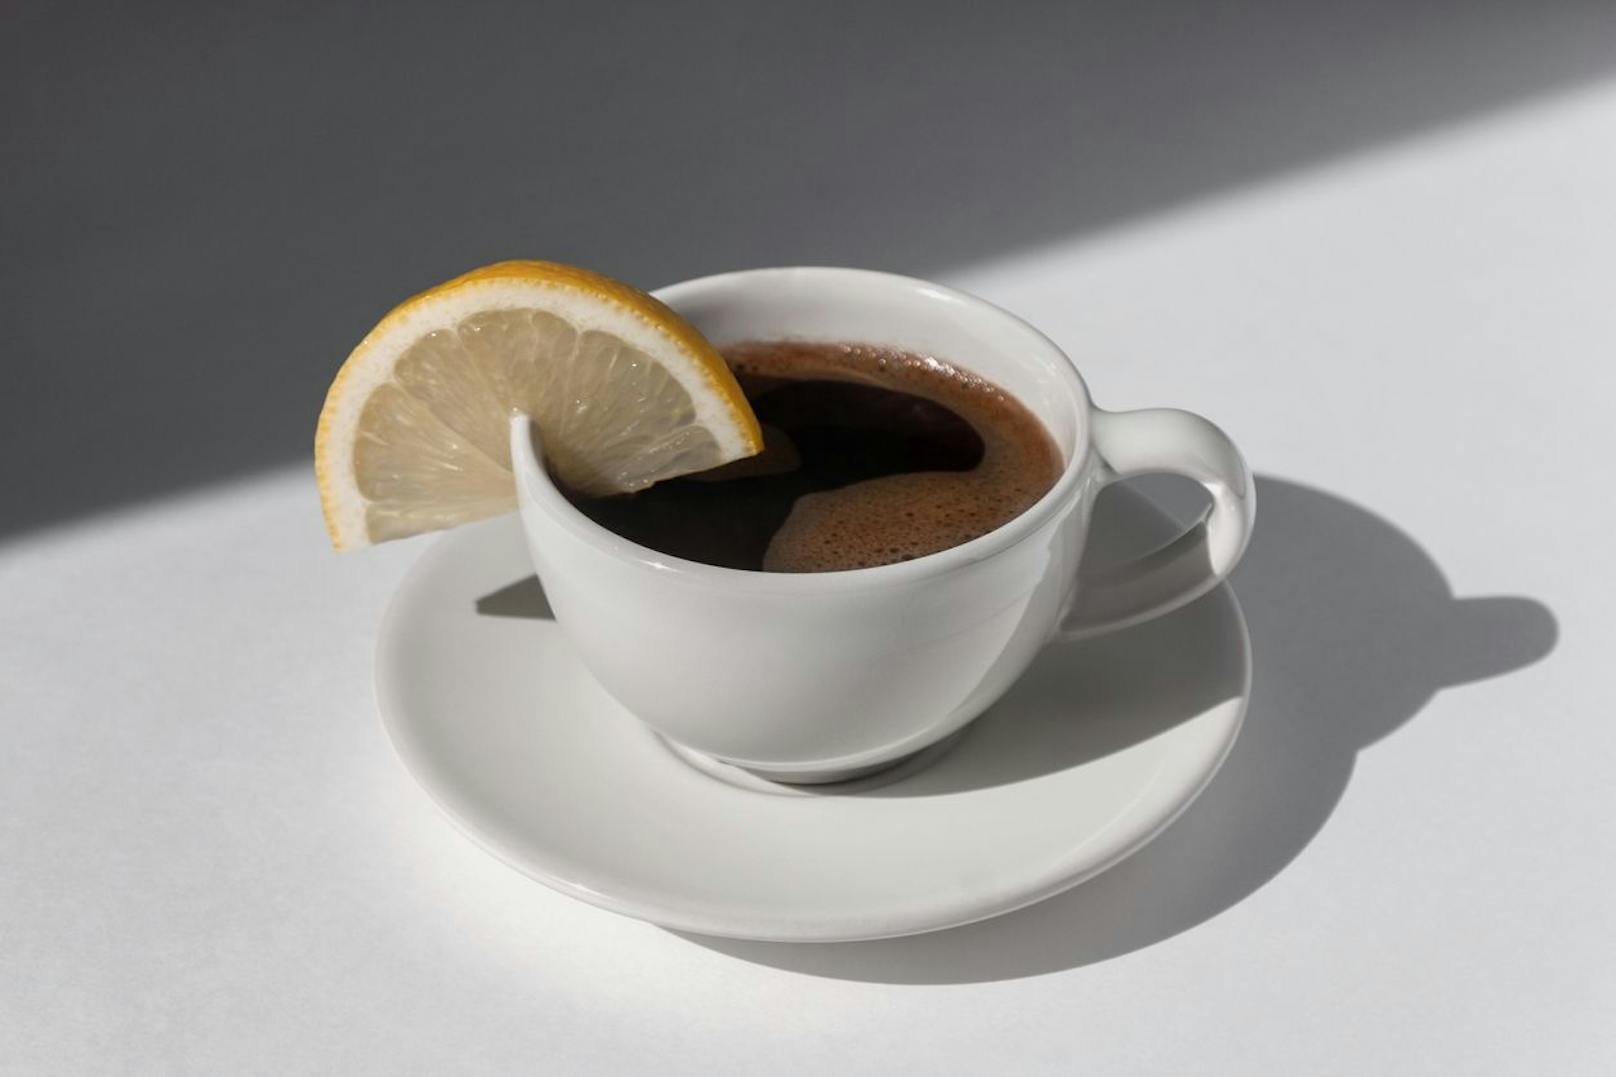 Bestehende Beschwerden kannst du mit einem heilenden Tee bekämpfen. Ein Zitrus-Kaffee kann dir zum Beispiel helfen deine Kopfschmerzen zu lindern und deinen Stoffwechsel in Schwung zu bringen. 